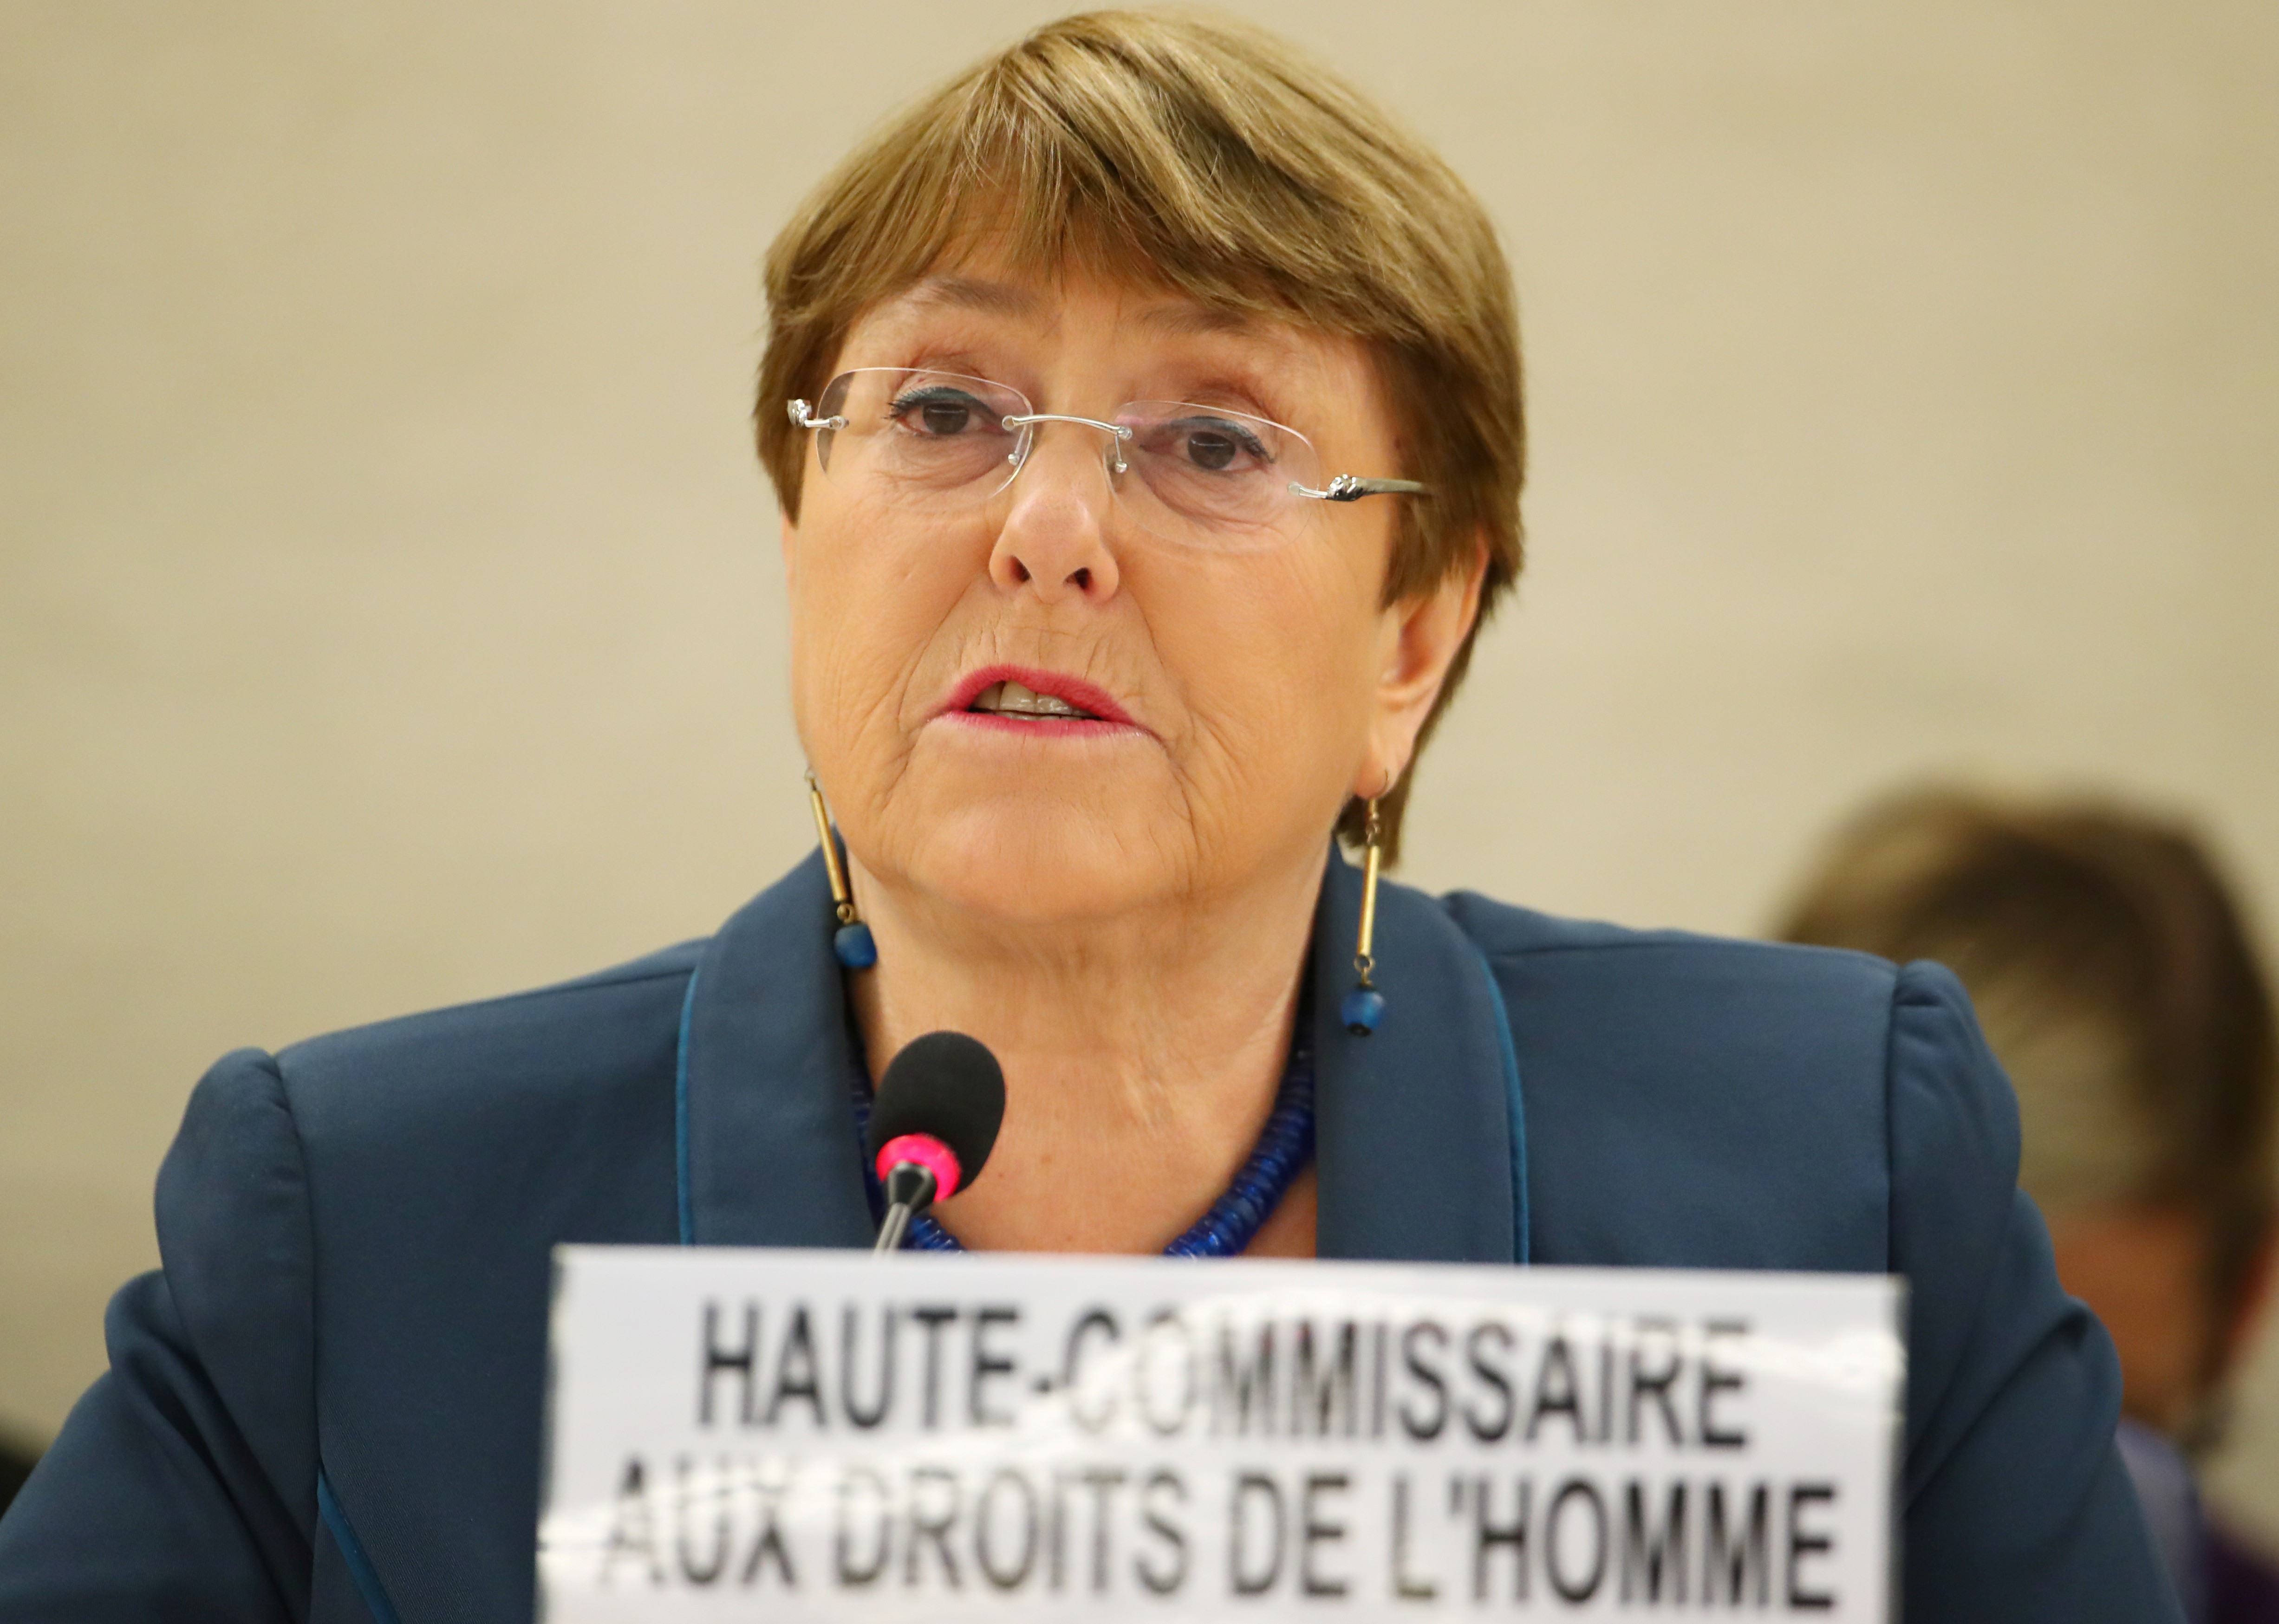 Na ONU, Michelle Bachelet critica 'ataques contra defensores dos direitos humanos' no Brasil thumbnail